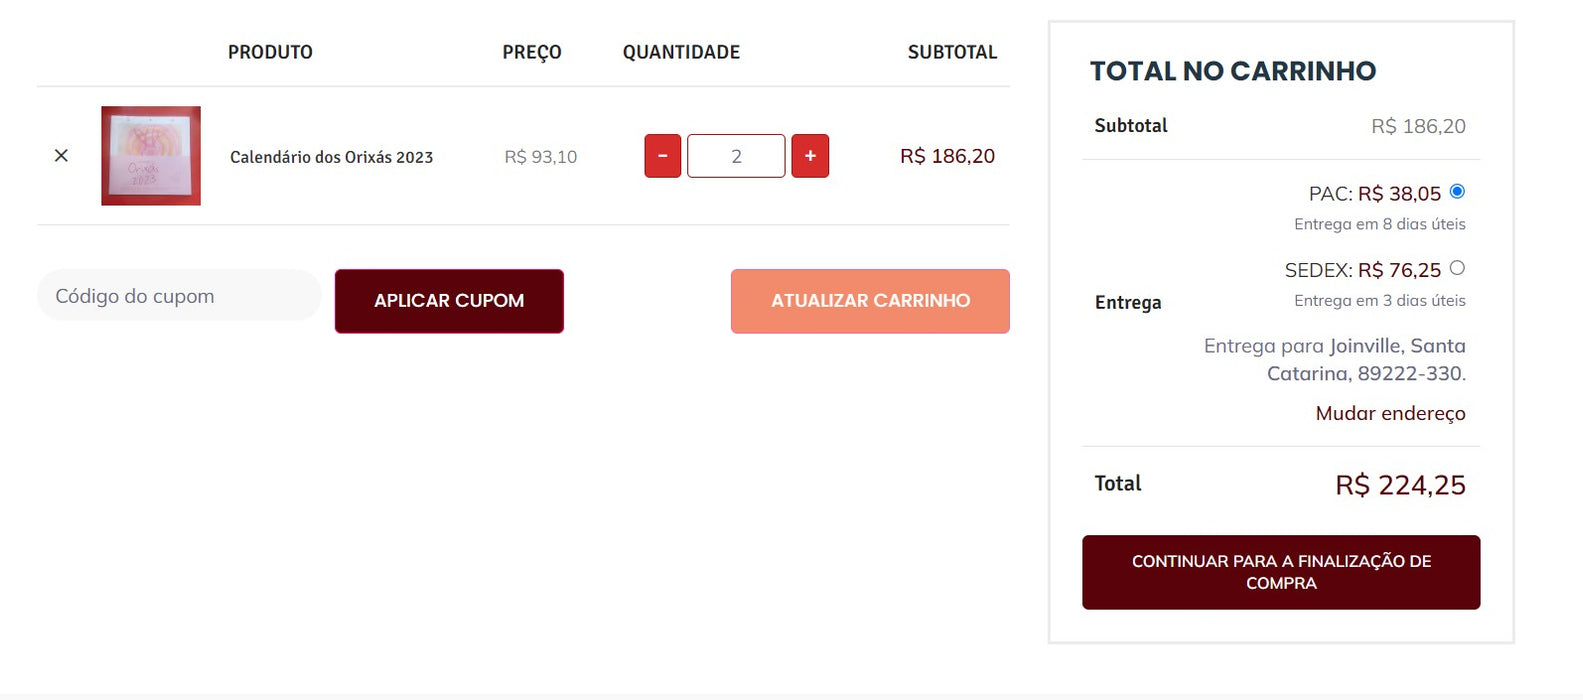 Personal Shopper | Buy from Brazil - Books - 4 items (DDP)- MKPBR - Brazilian Brands Worldwide